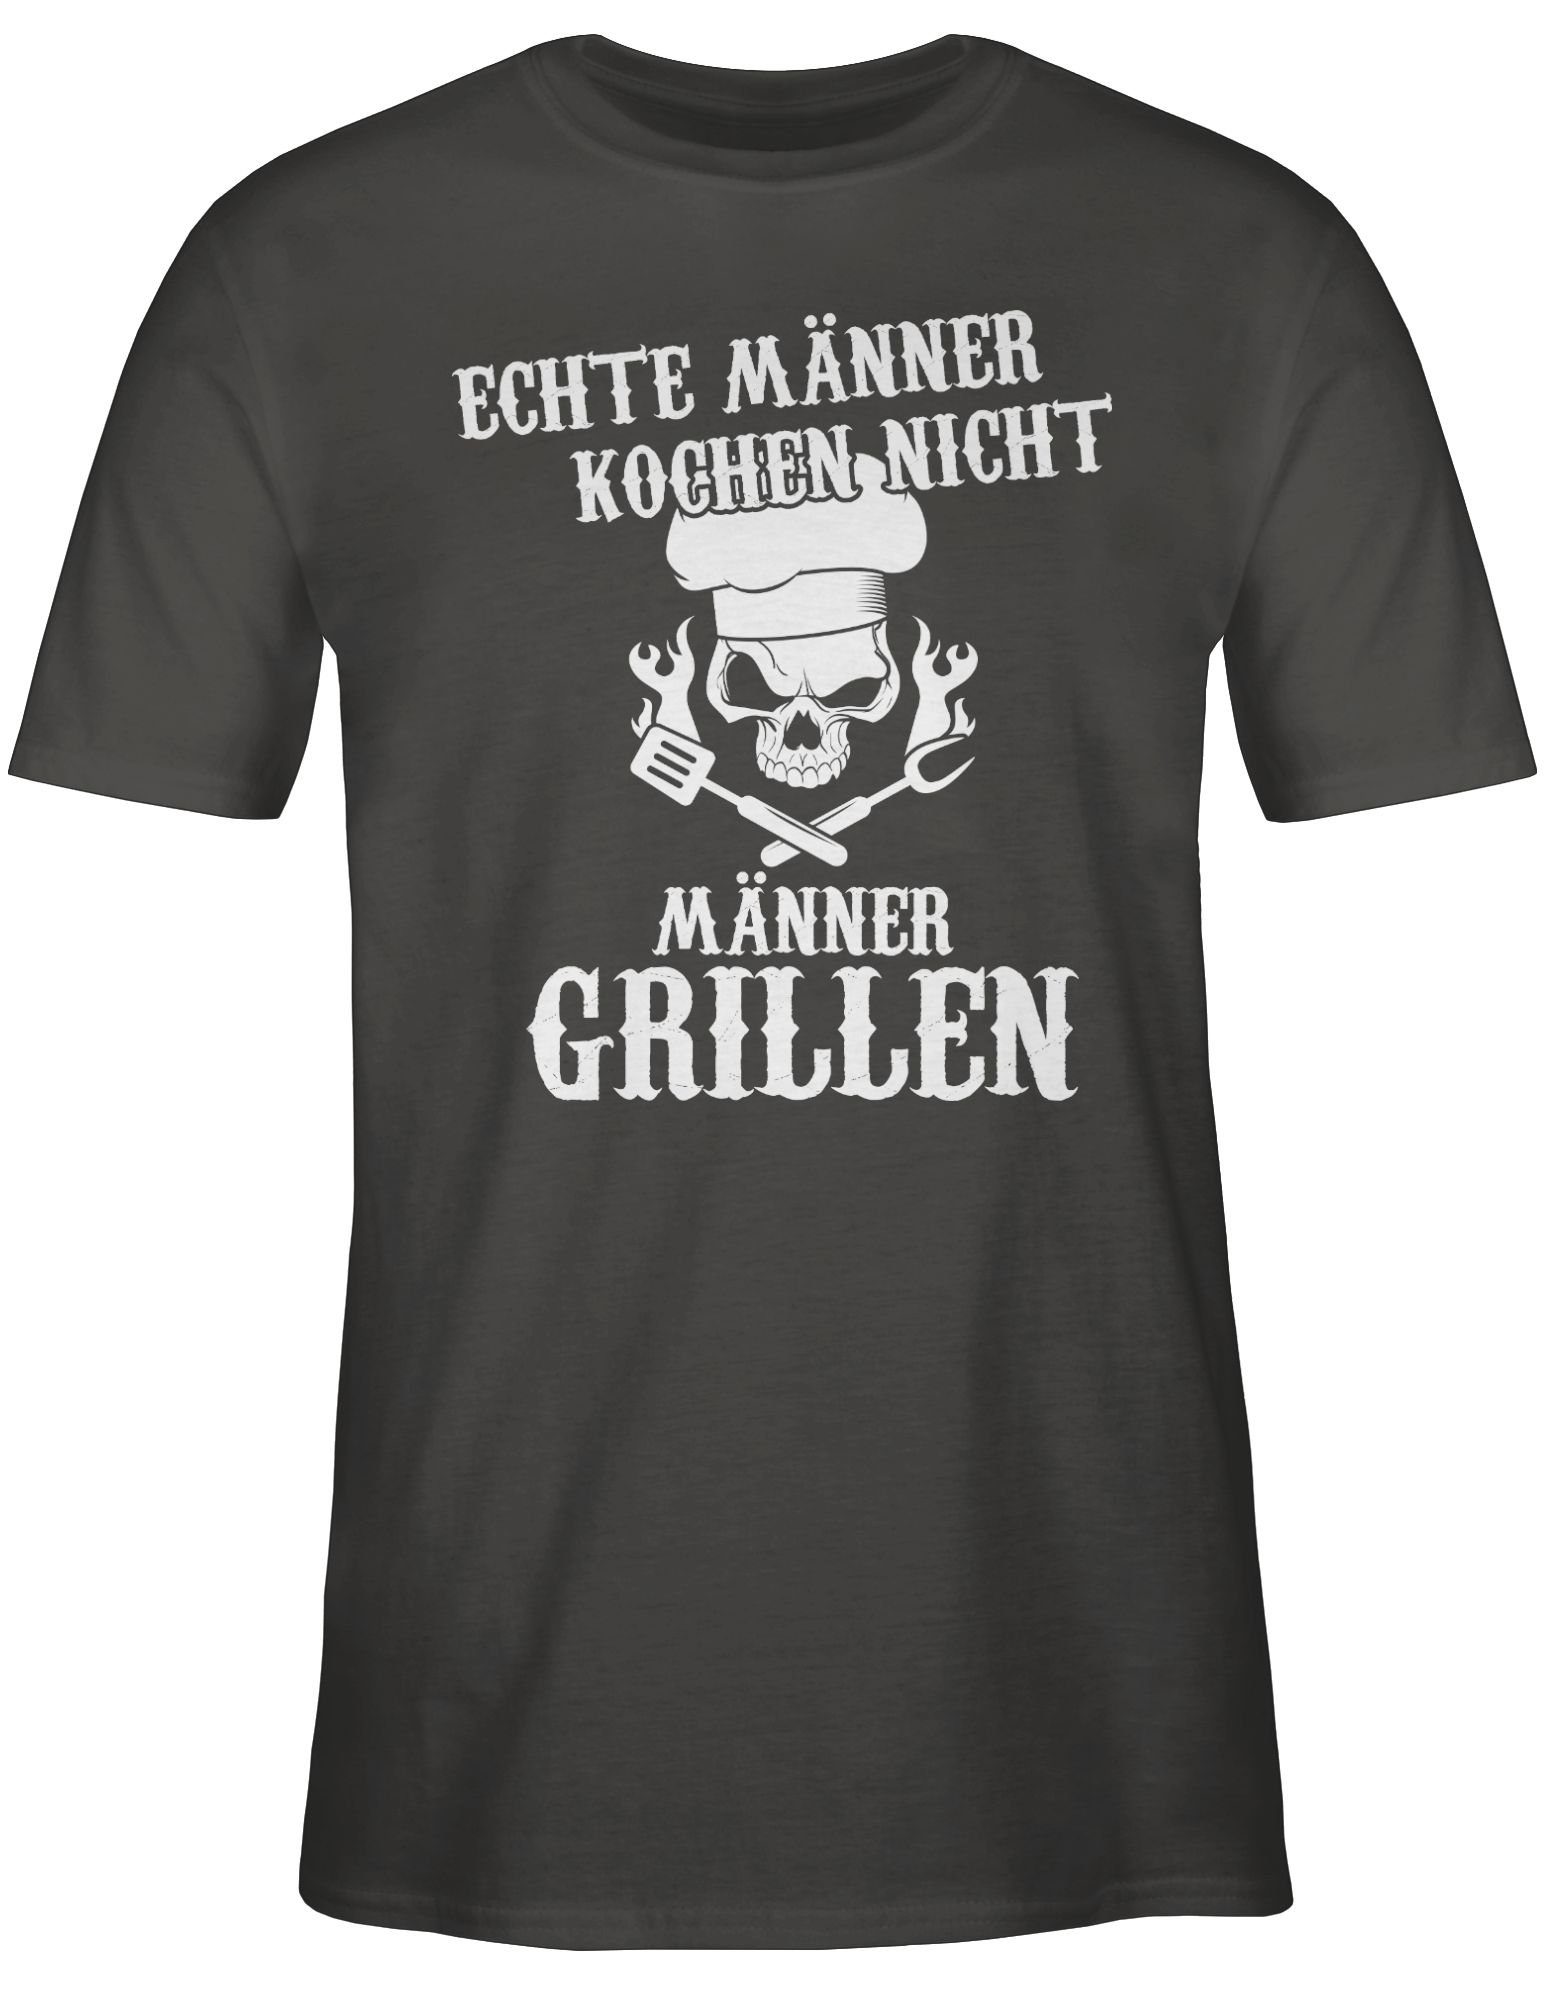 nicht grillen kochen Männer Männer Echte Geschenk 3 Grillen Shirtracer T-Shirt Dunkelgrau Grillzubehör &